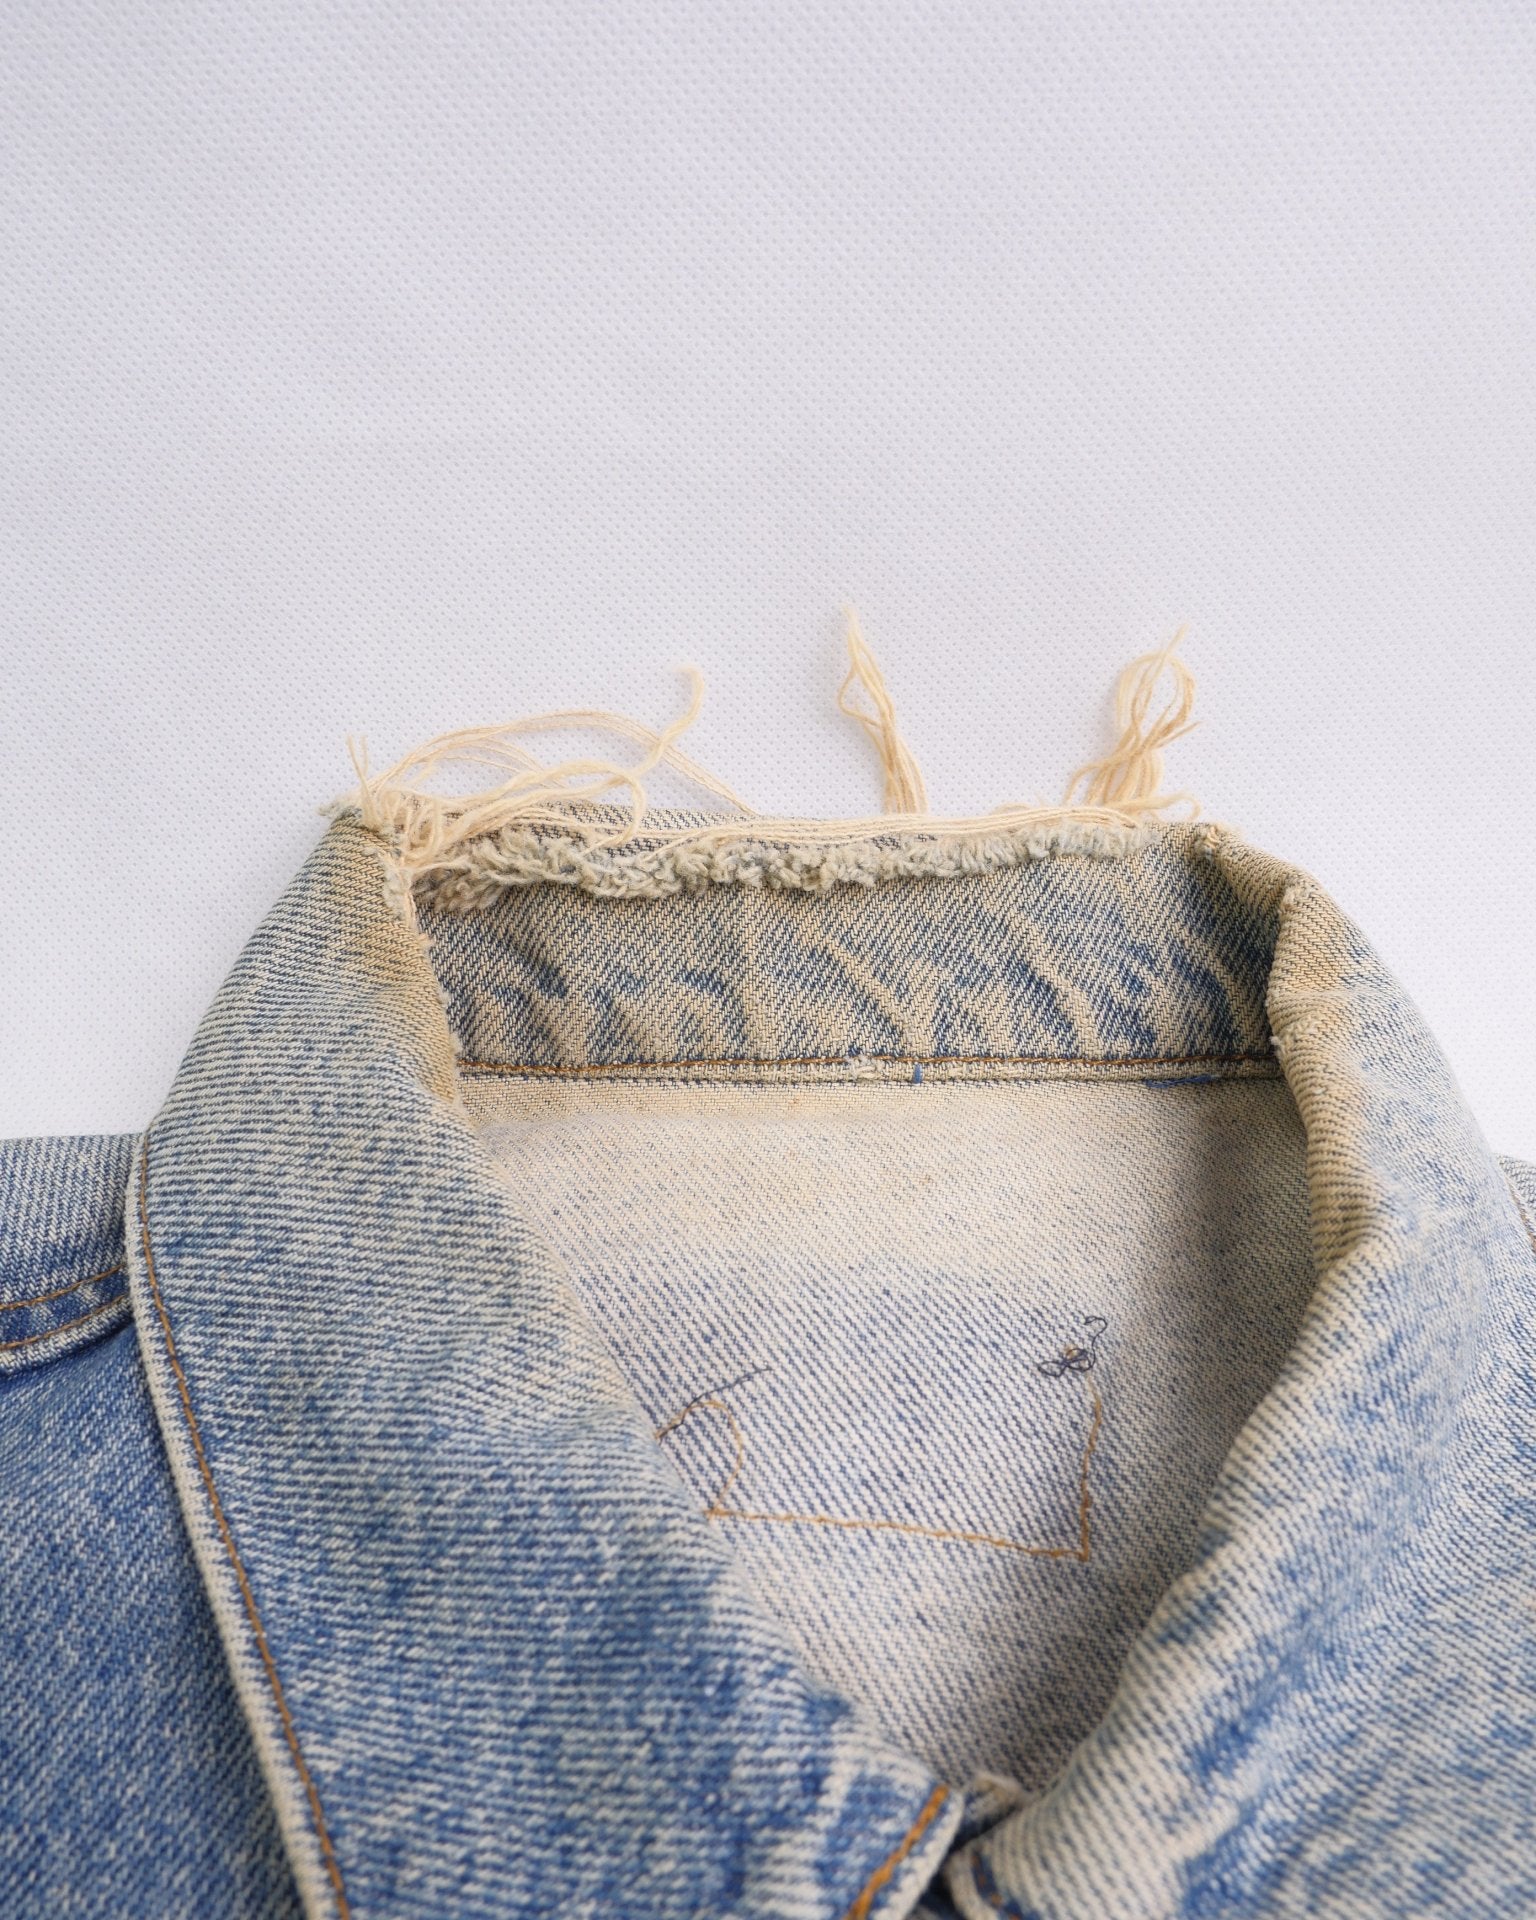 Levis patched Logo Vintage Jeans Jacke - Peeces